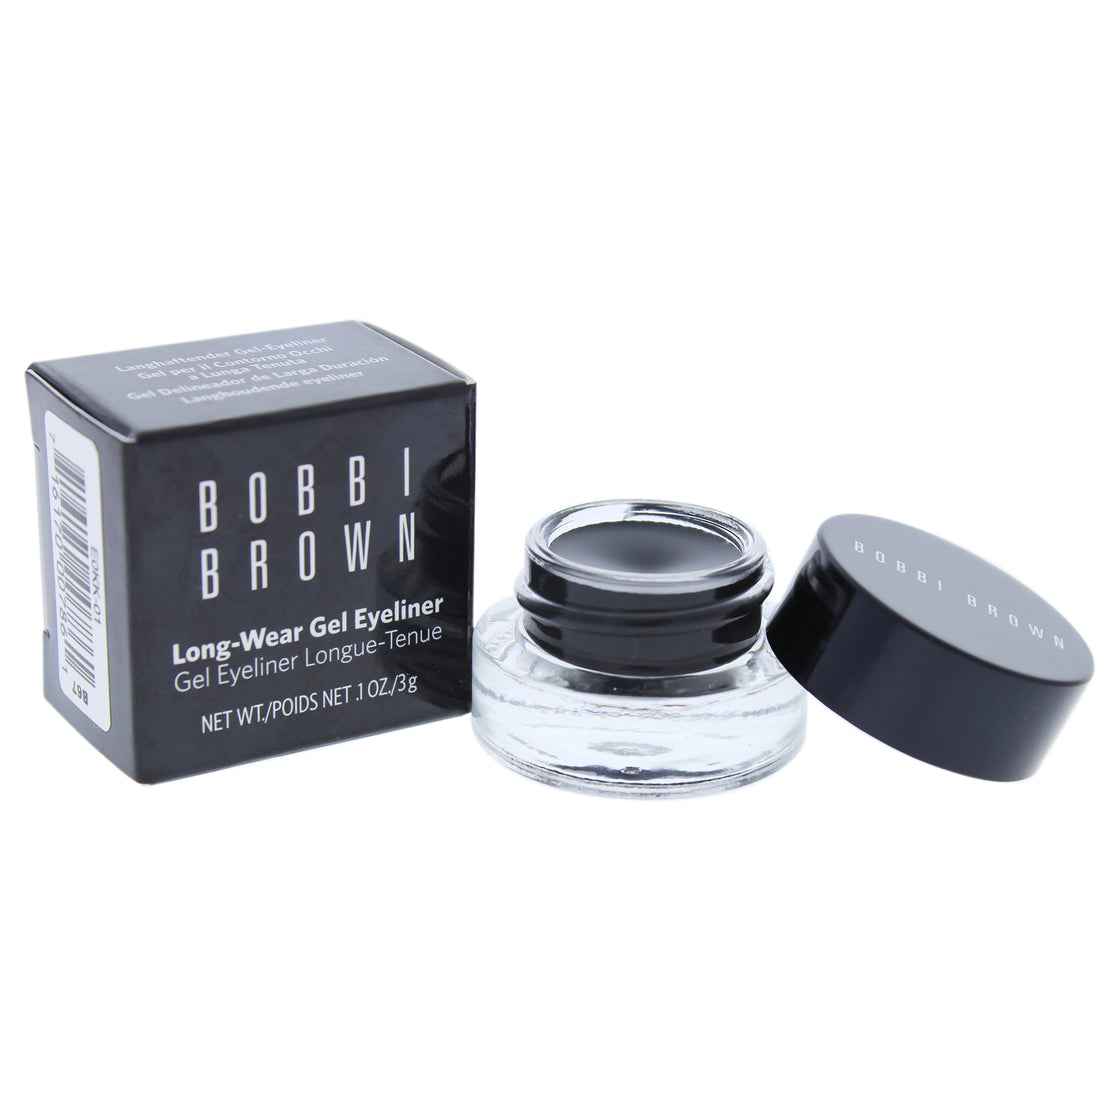 Long-Wear Gel Eyeliner - 1 Black Ink by Bobbi Brown for Women - 0.1 oz Eyeliner